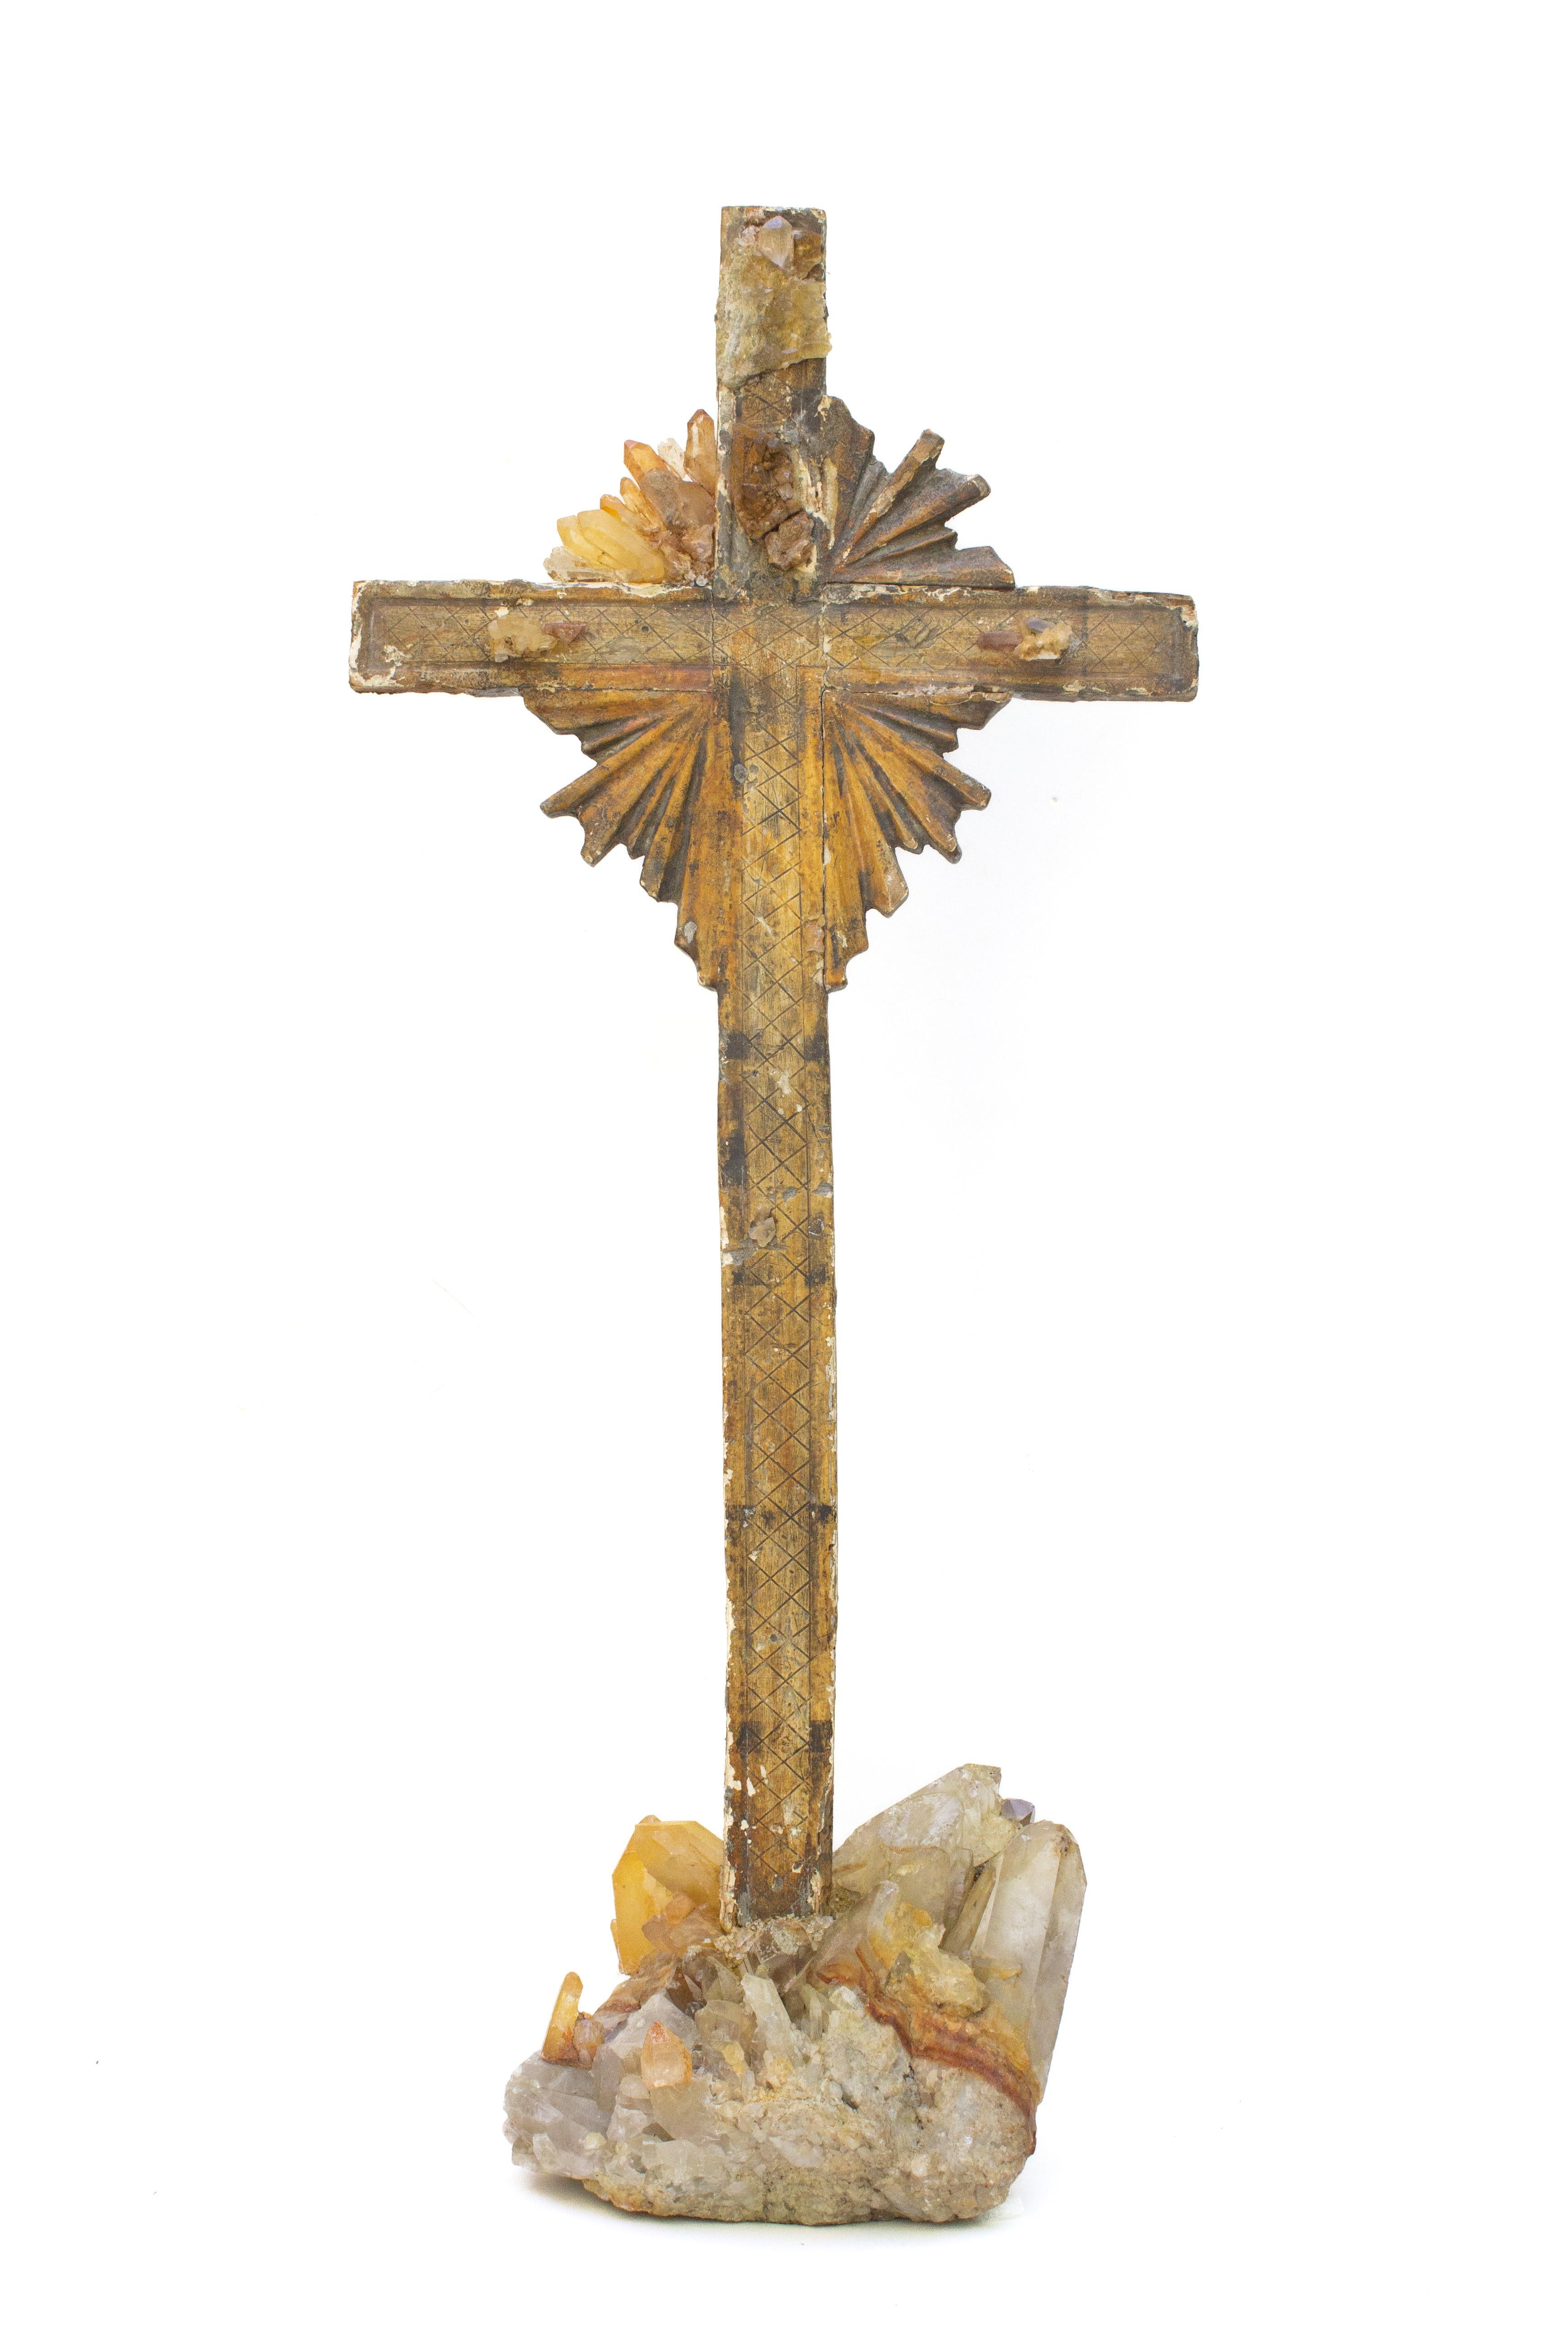 Croix italienne du XVIIIe siècle ornée de cristaux de quartz tangerine sur une base de quartz tangerine et de grappes de cristaux. Le crucifix provenait à l'origine d'une église de Toscane. Les pointes de quartz de cristal reproduisent les rayons de